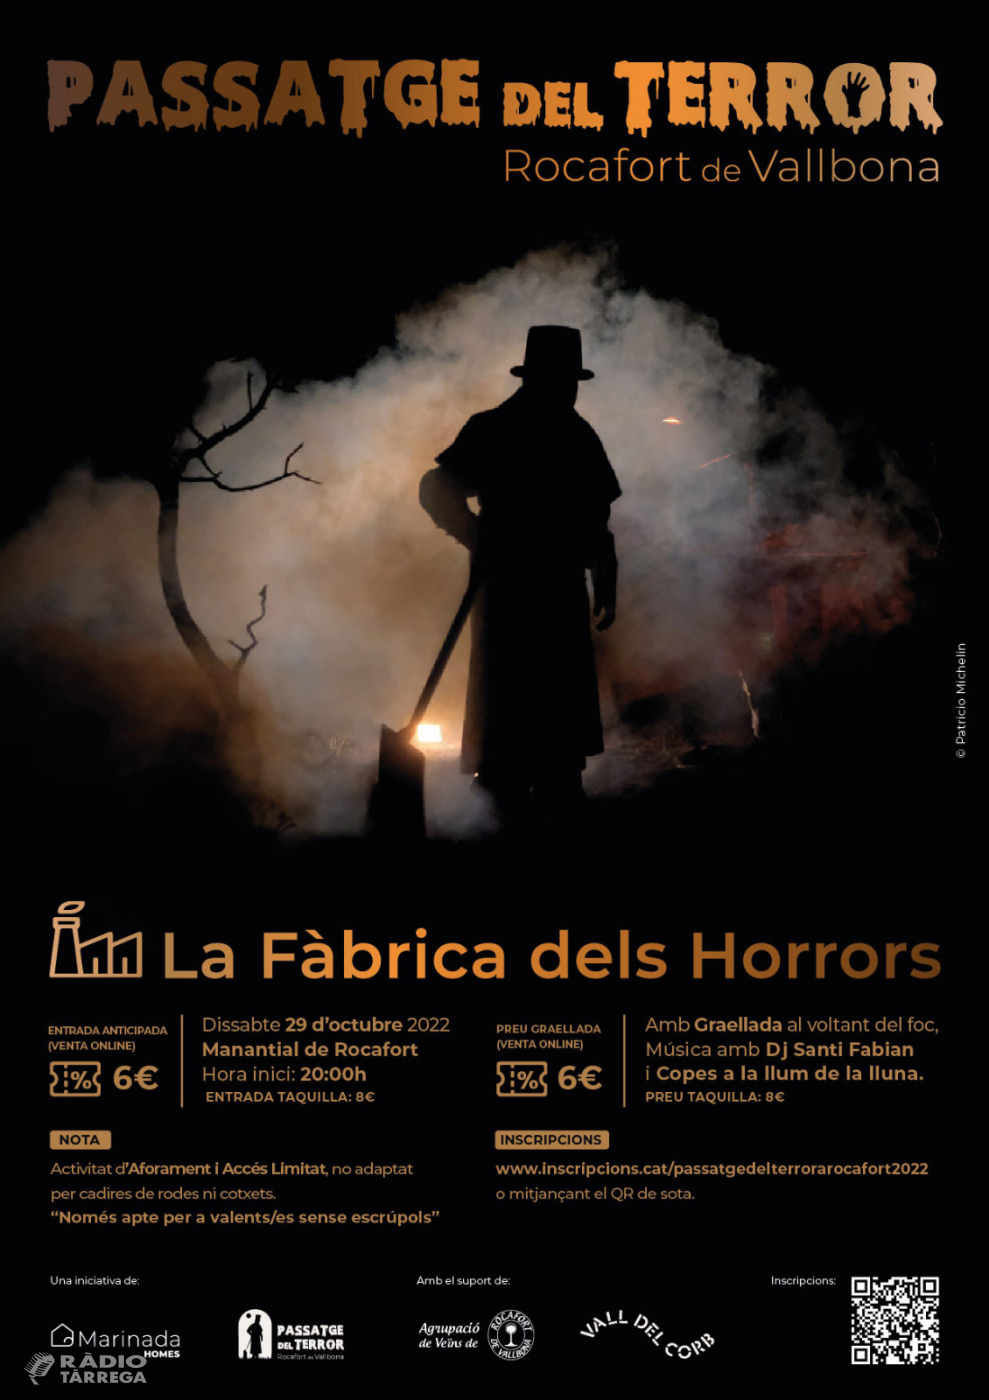 Rocafort de Vallbona organitza el passatge del Terror "La fàbrica dels horrors", el 29 d'octubre